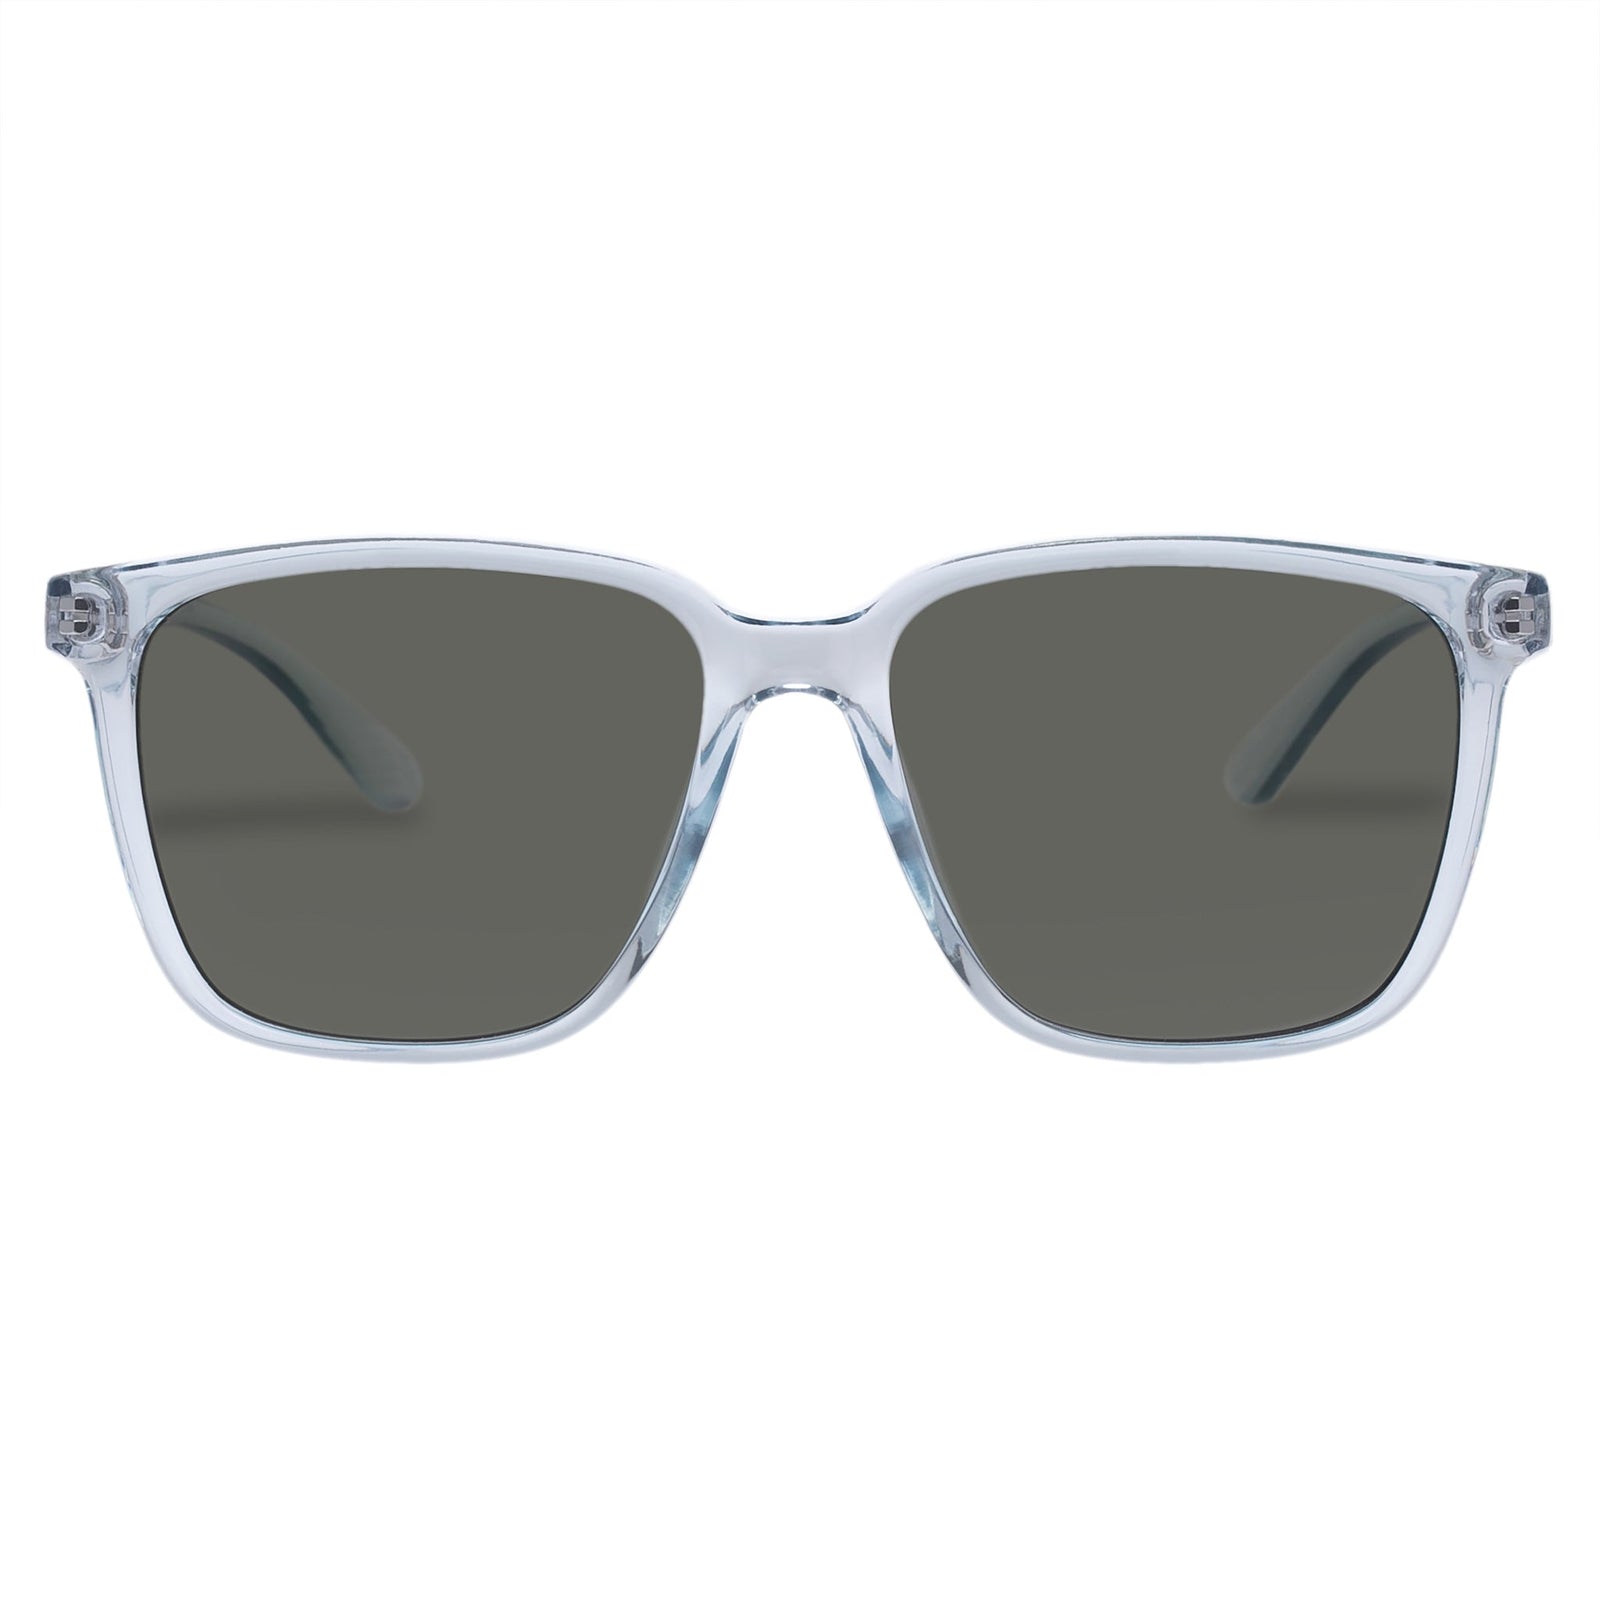 Speed Of Night Pewter Uni-Sex Round Sunglasses | Le Spec – Le Specs